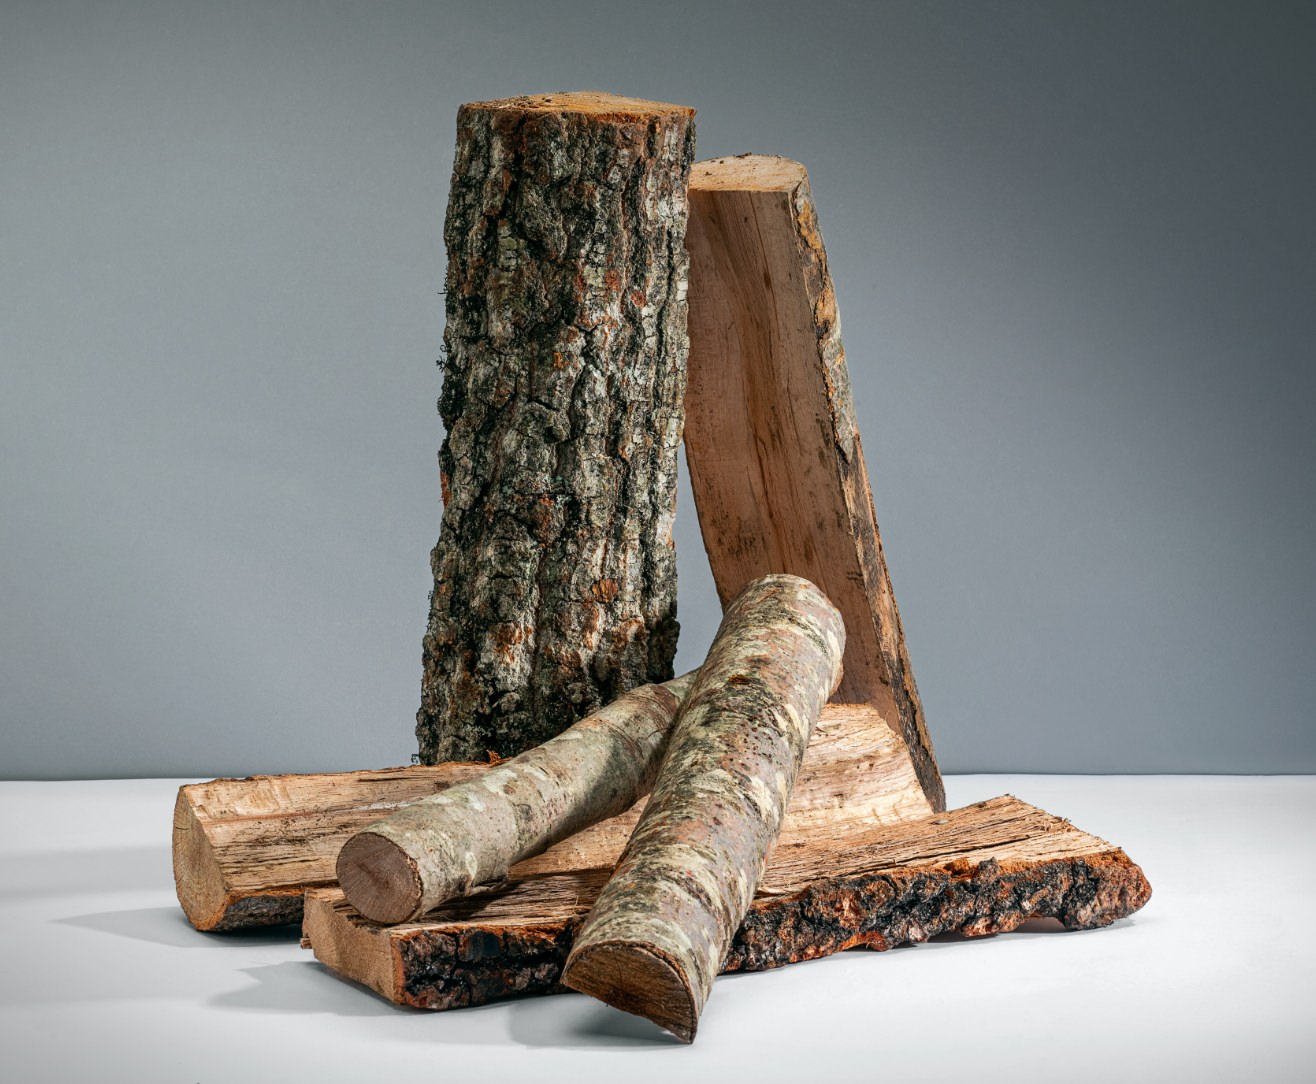 Dettaglio diversi tipi di ceppi legna da ardere in vendita a Milano presso Cella Combustibili